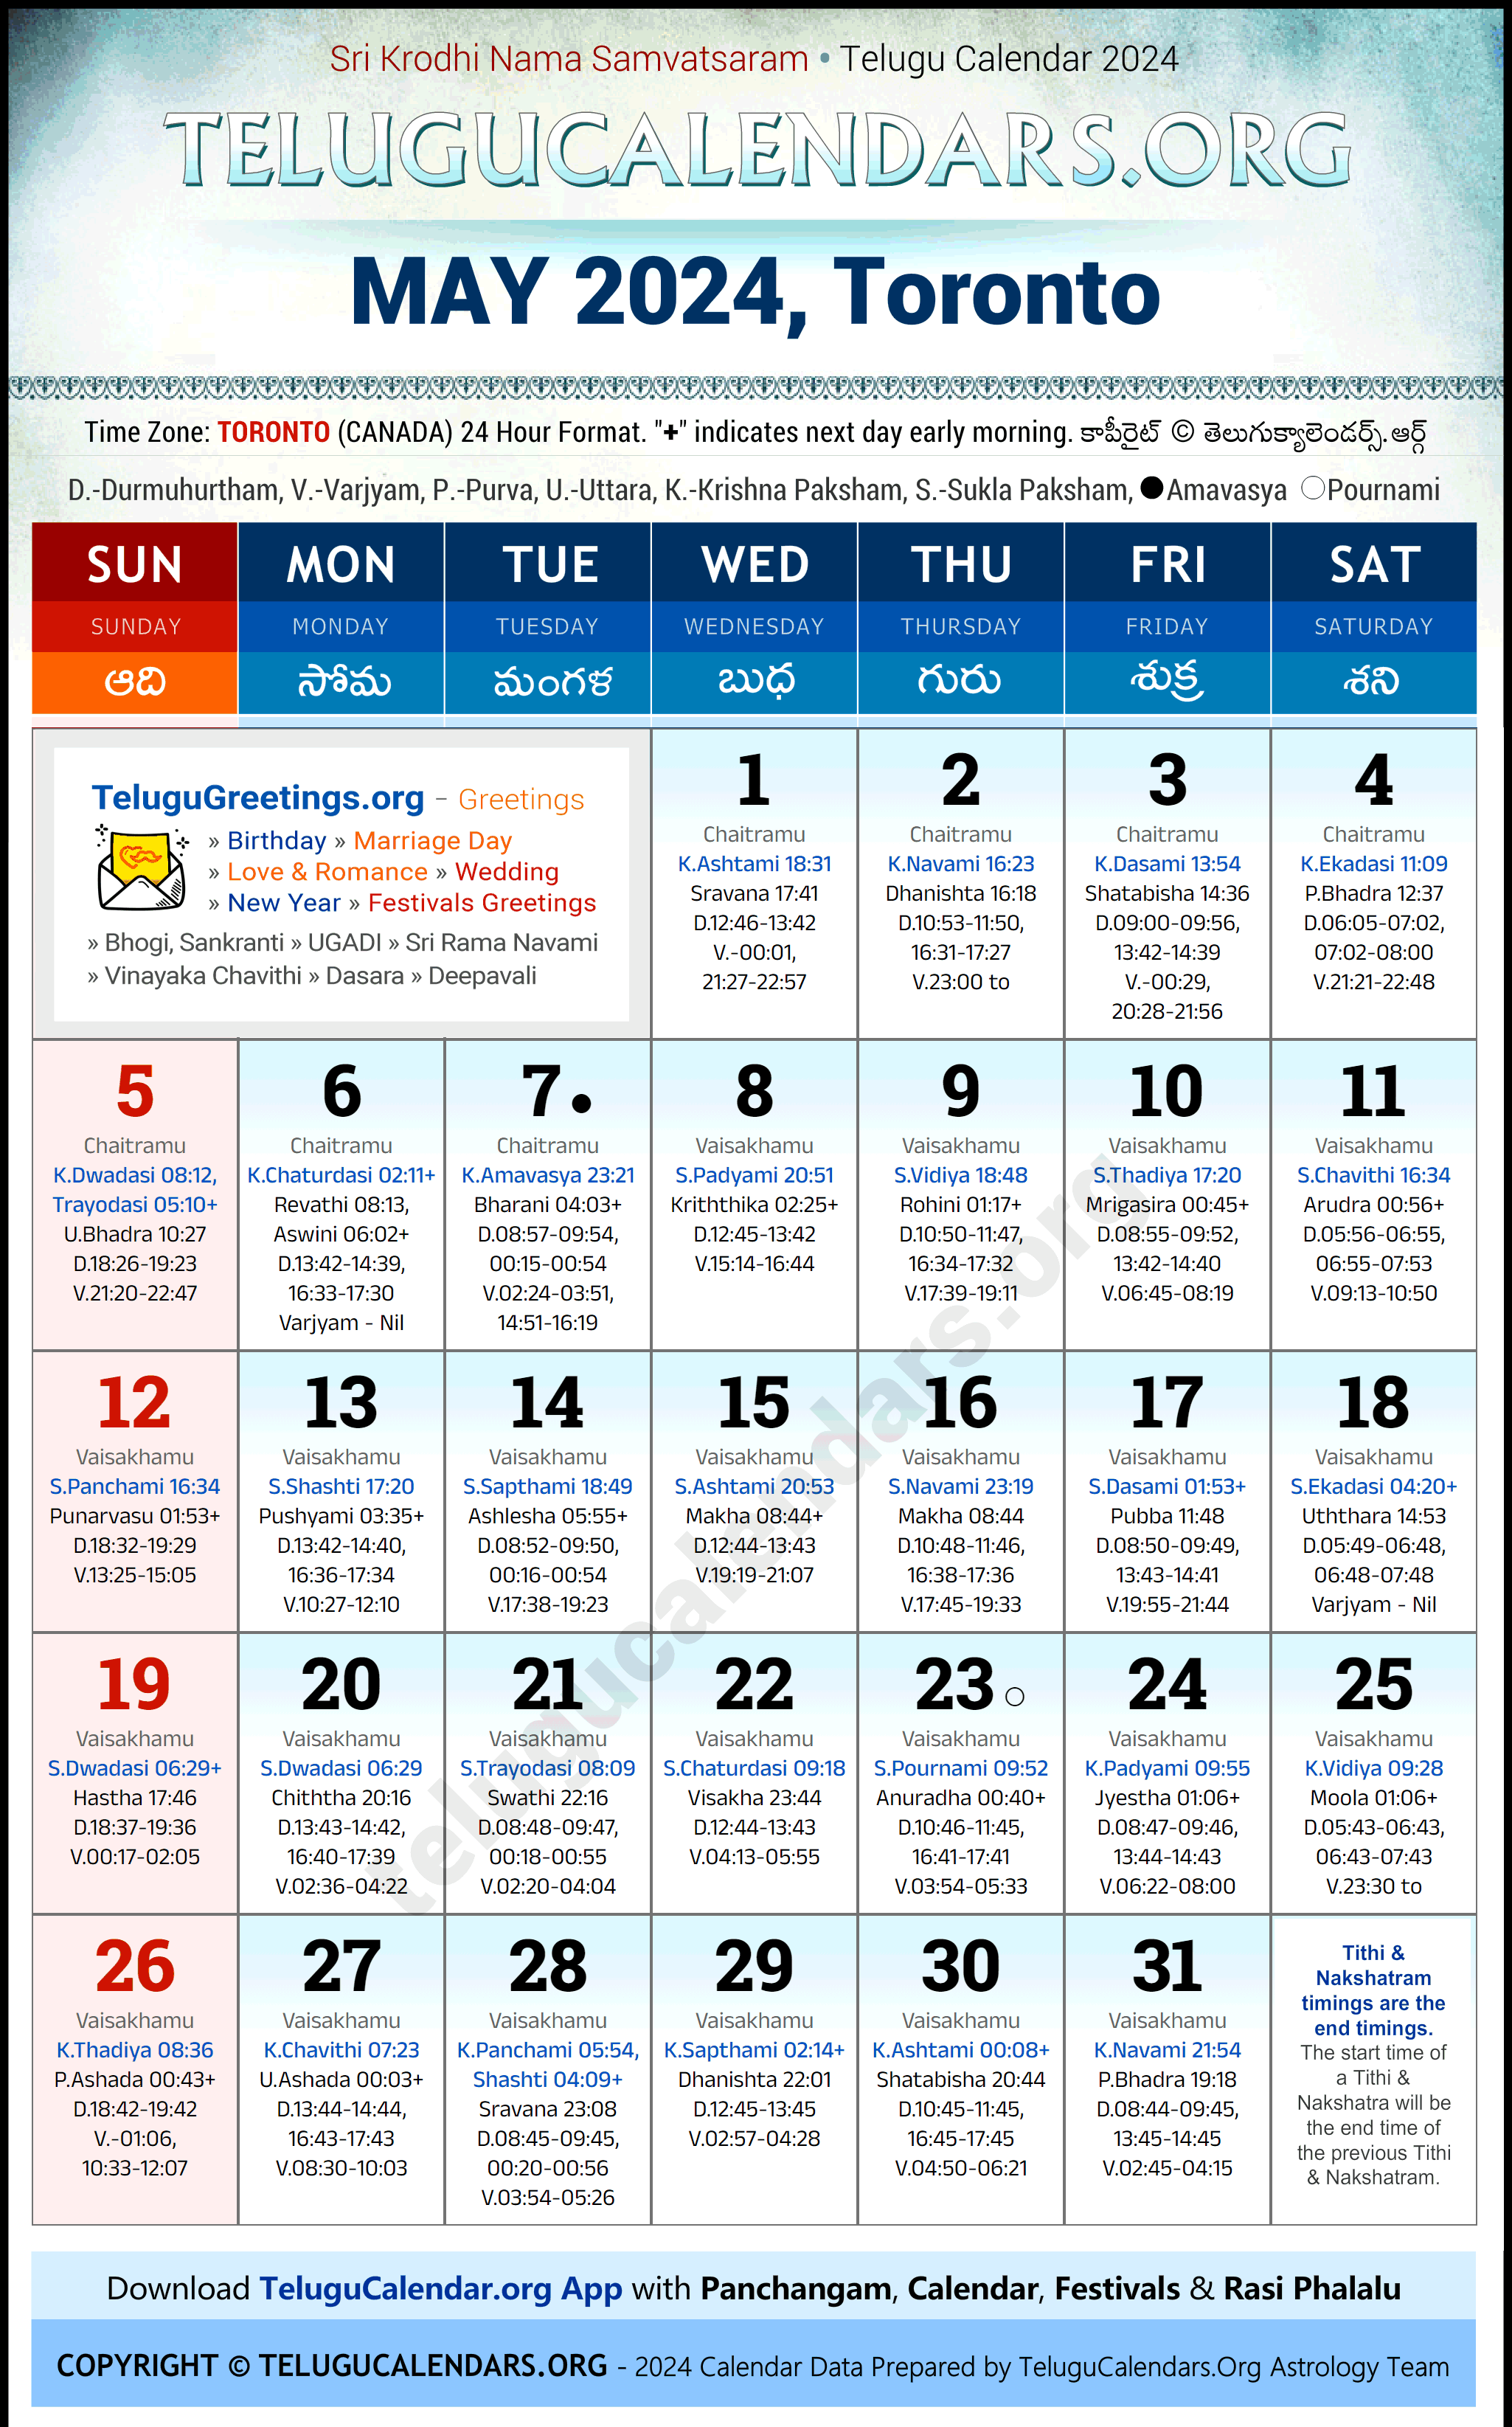 Telugu Calendar 2024 May Festivals for Toronto